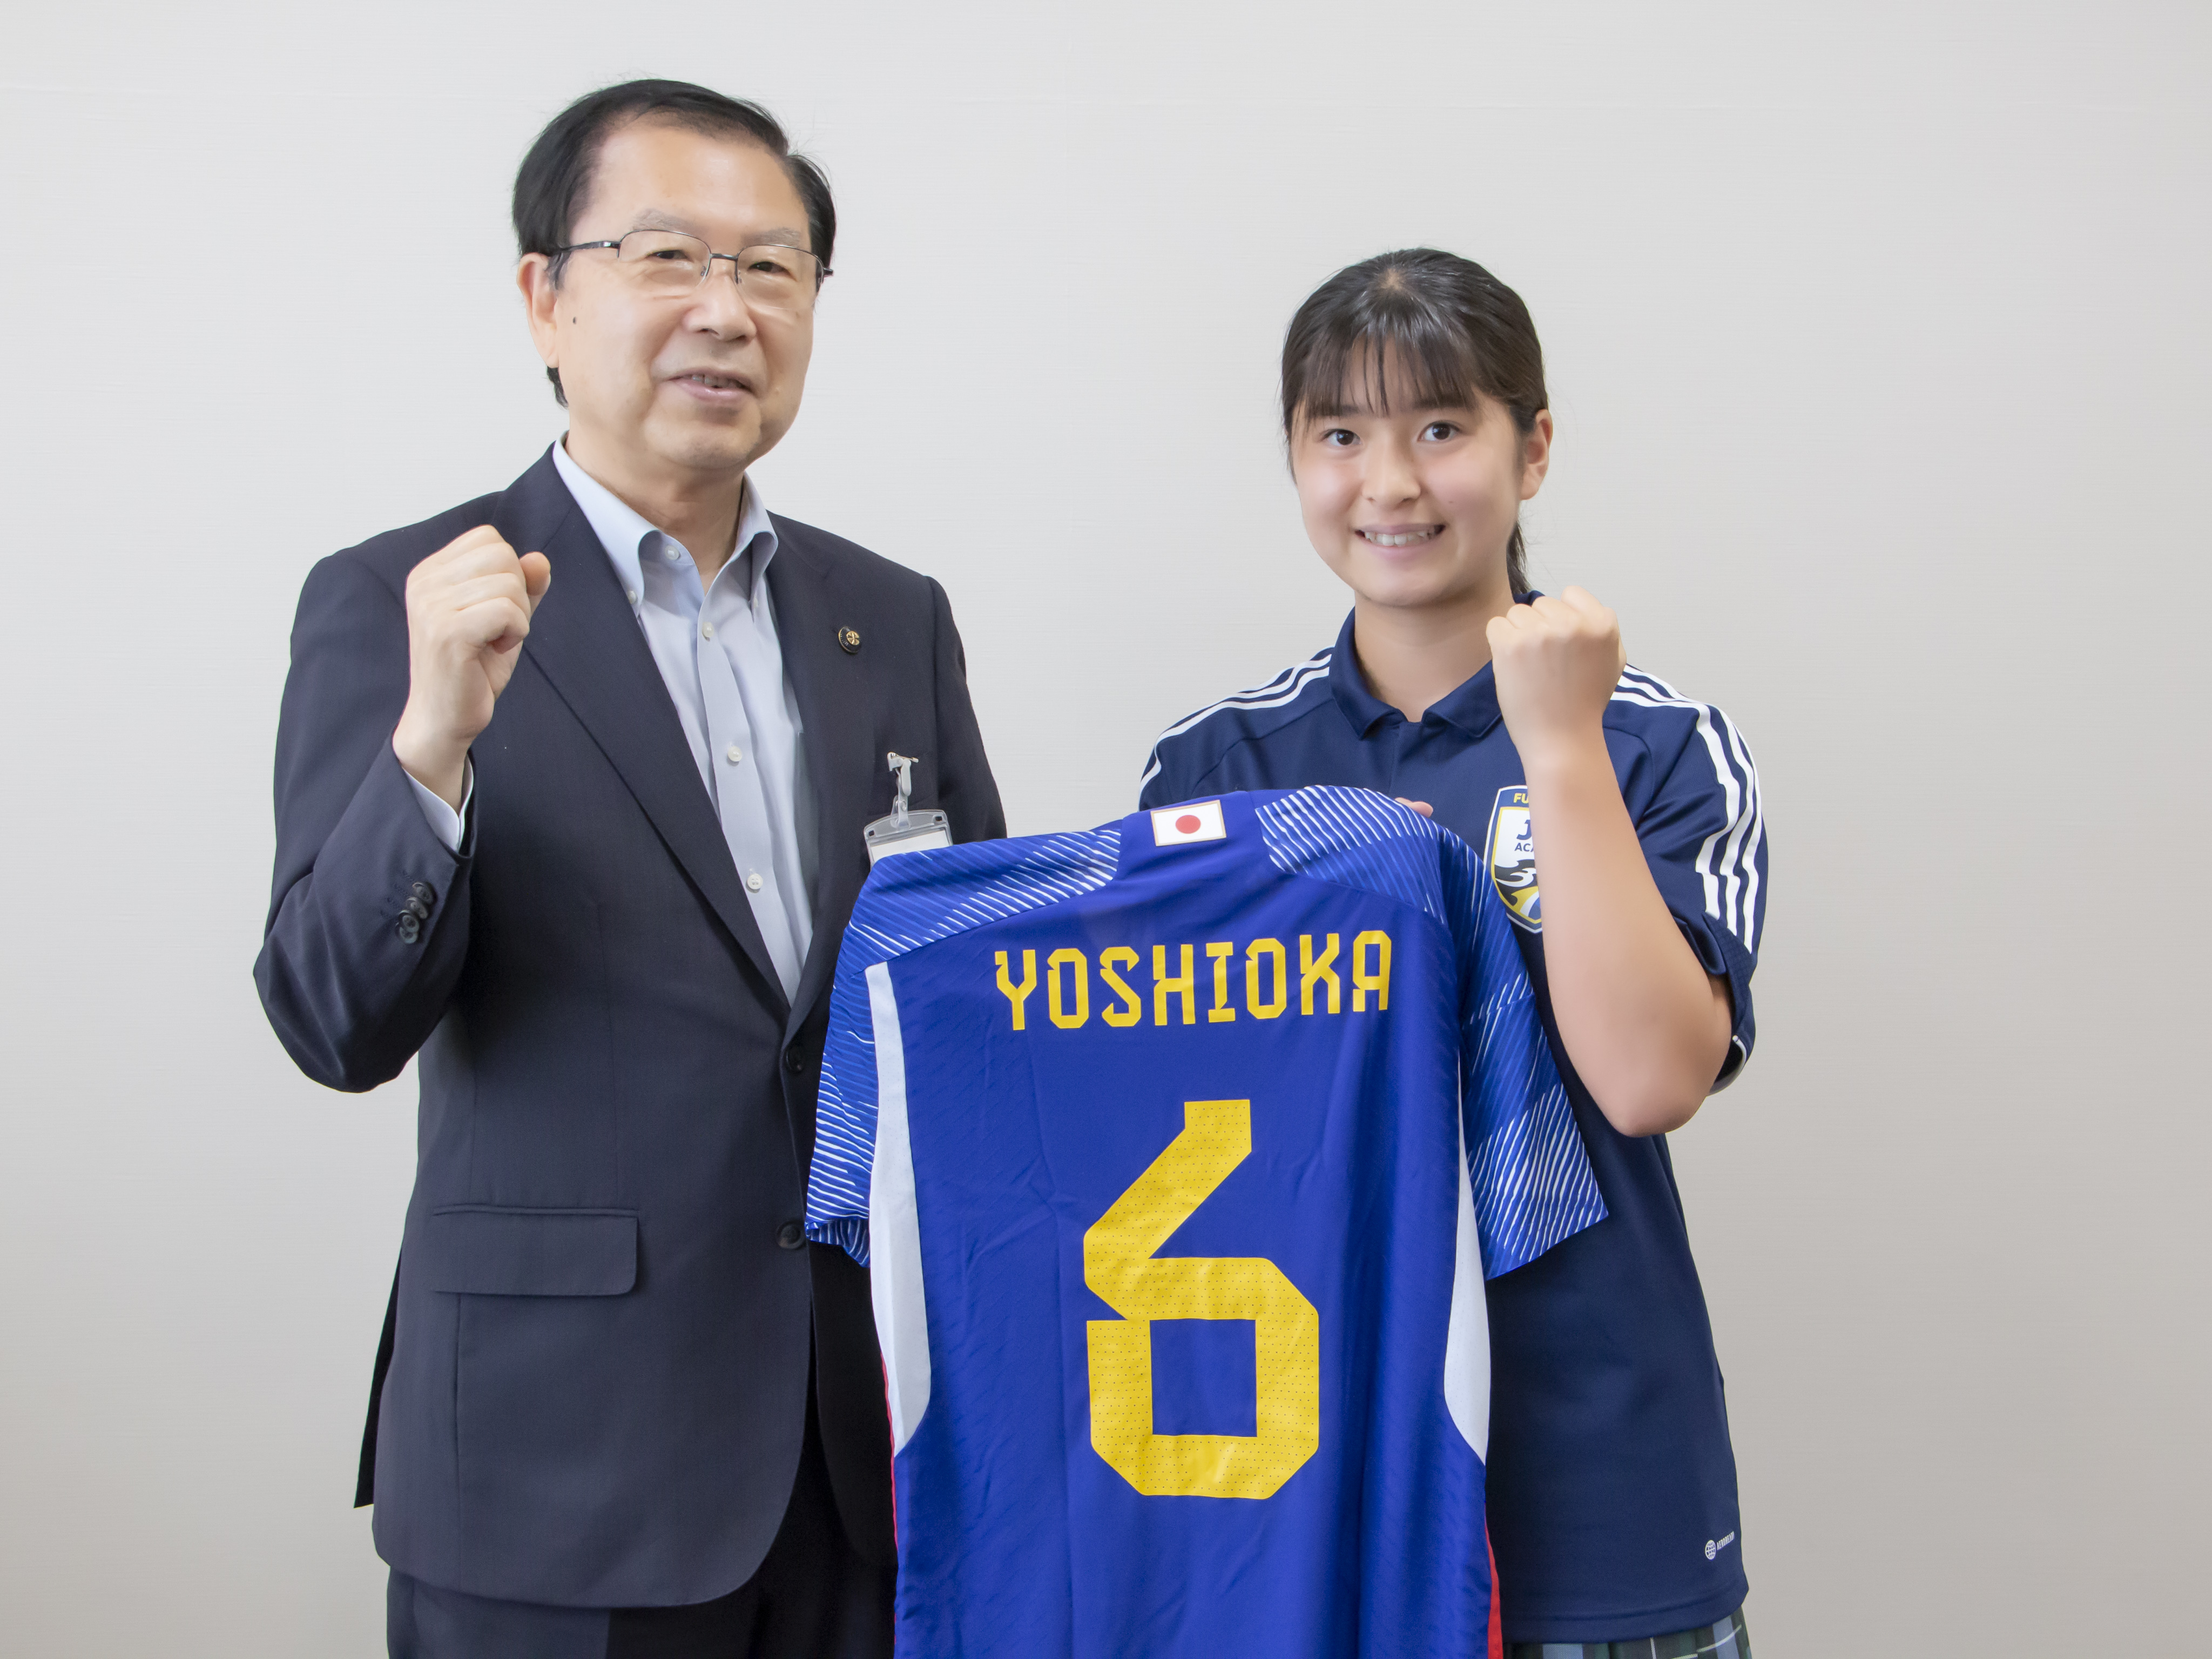 日本代表のユニフォームを持って市長と記念撮影する吉岡選手